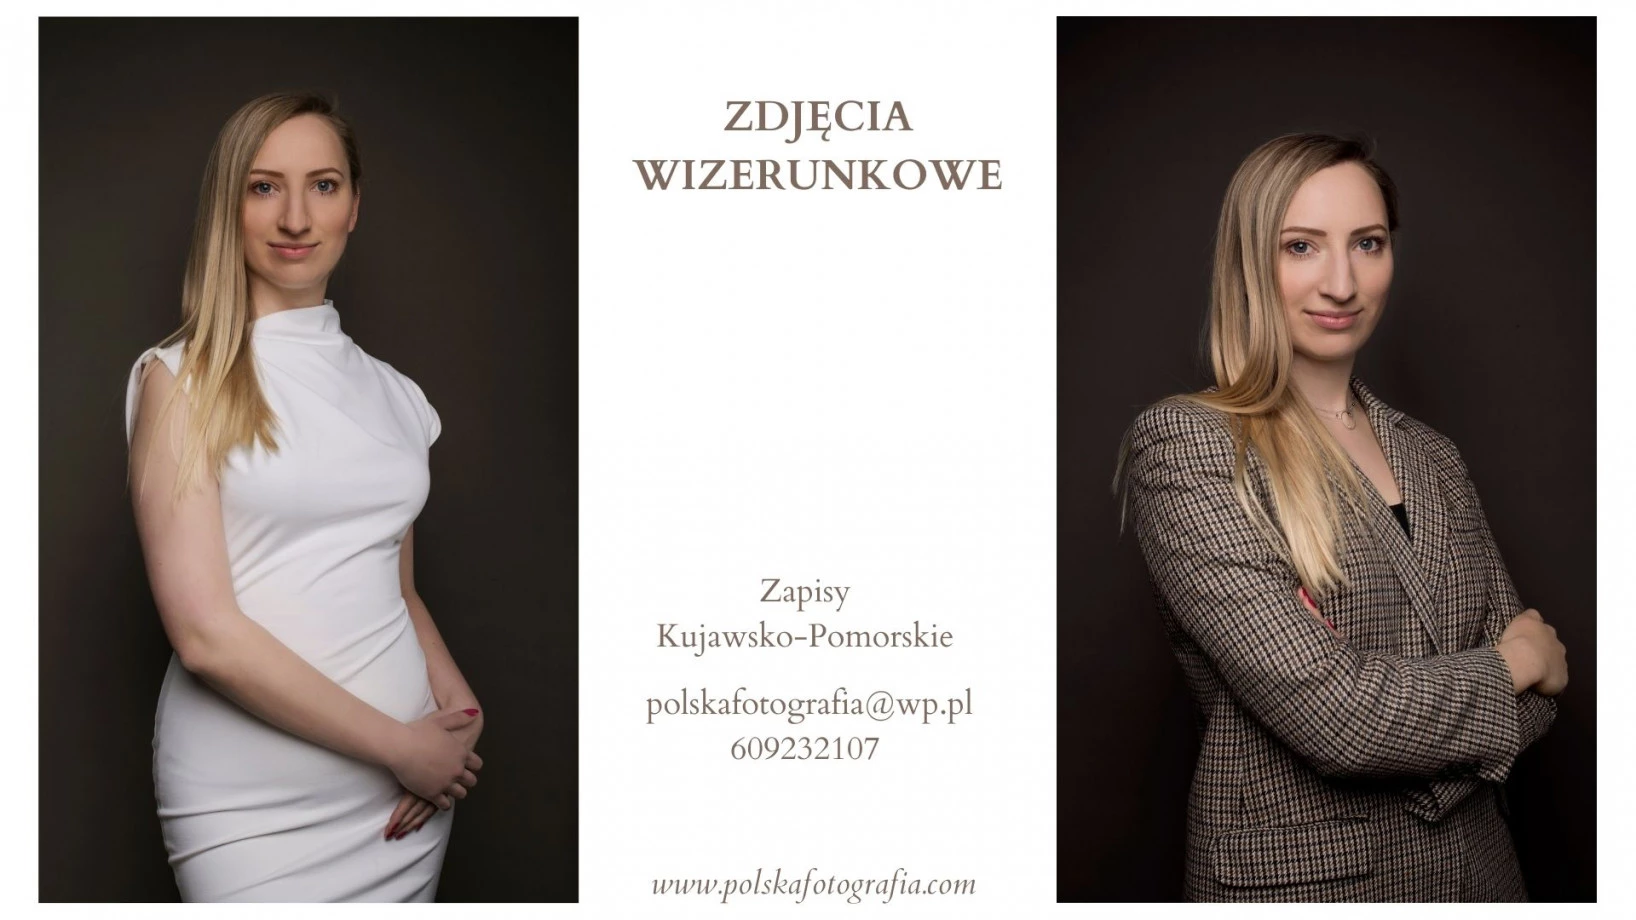 zdjęcia bydgoszcz fotograf anna-lukaszewicz portfolio fotografia biznesowa sesje biznesowe pracownicze wizerunkowe biuro